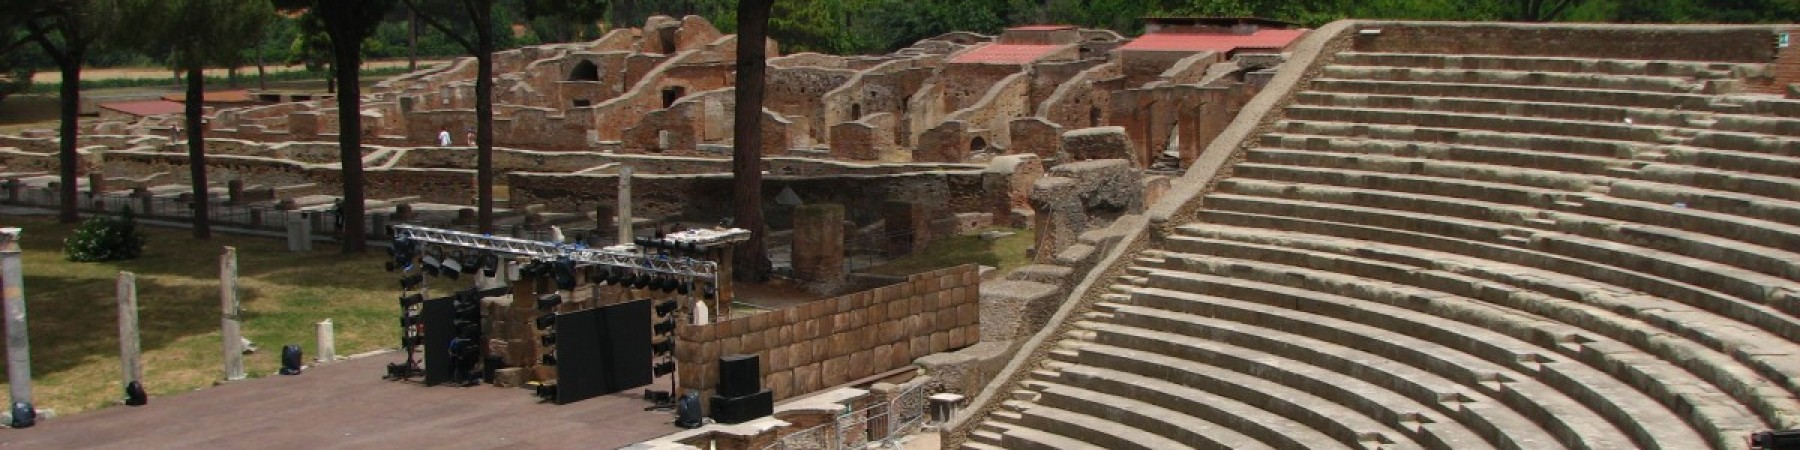 Écoles Tour guide - Ostia Antique